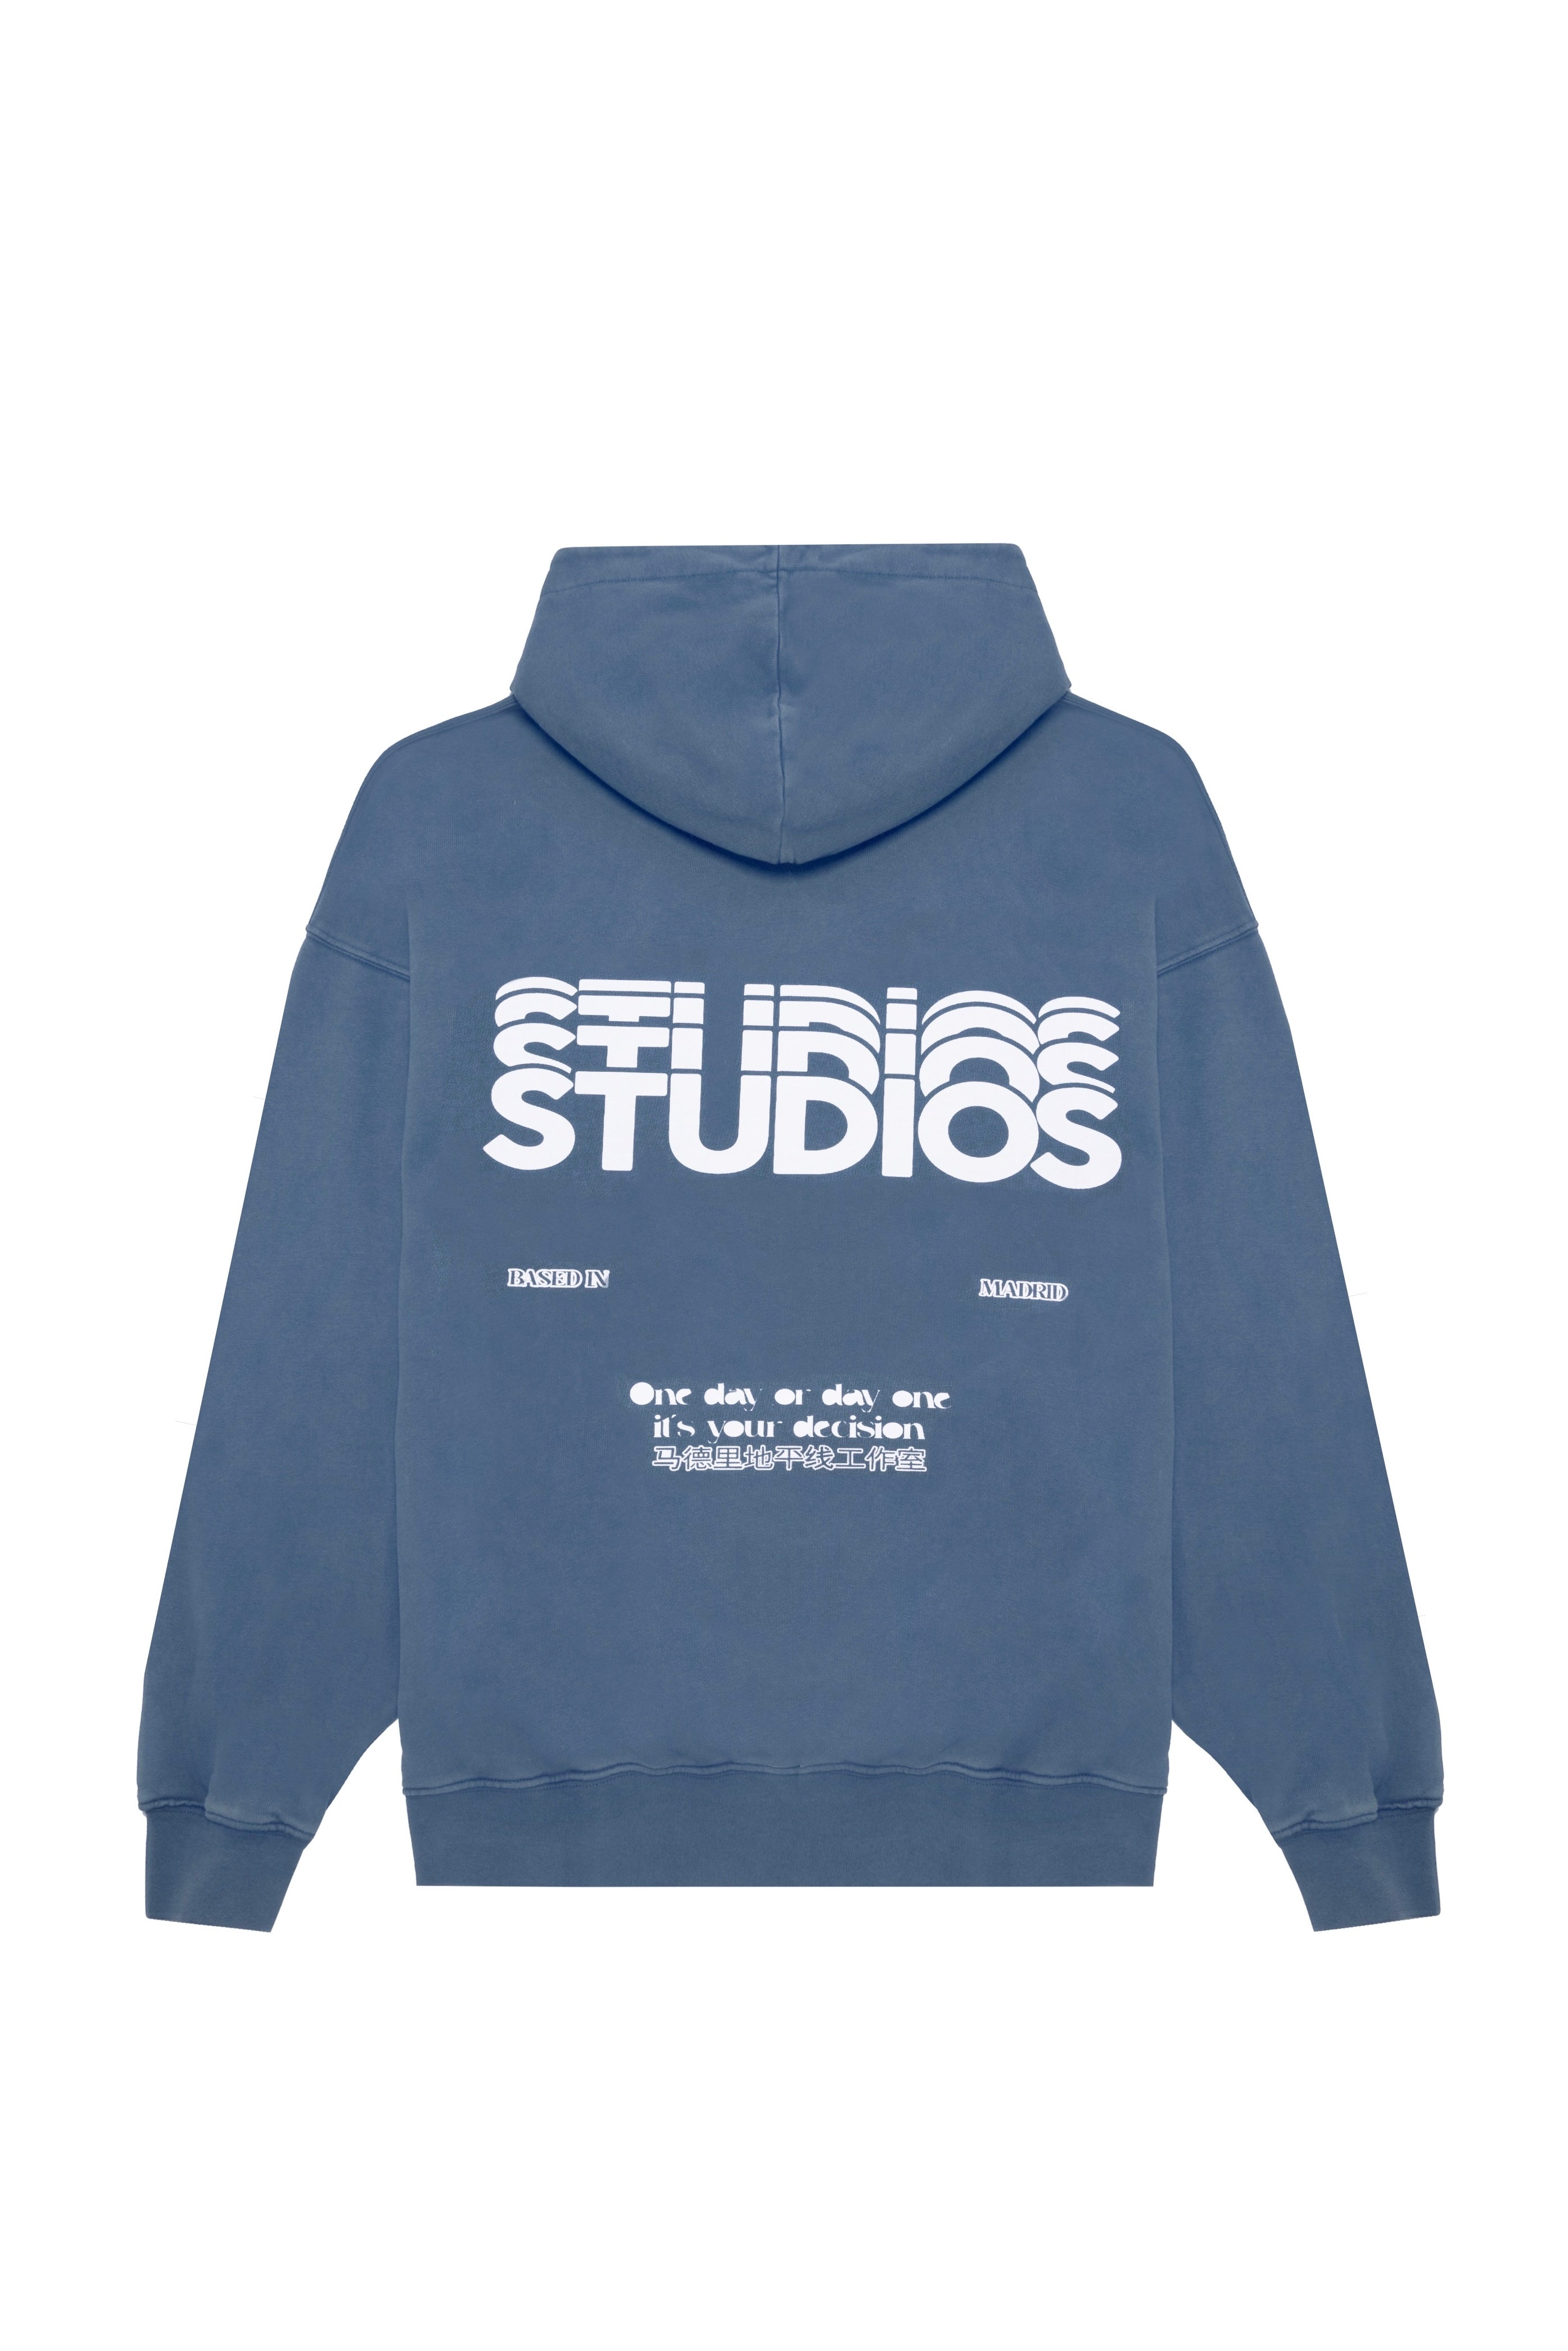 STEEL BLUE “STUDIOS” HOODIE – Horizon Studios